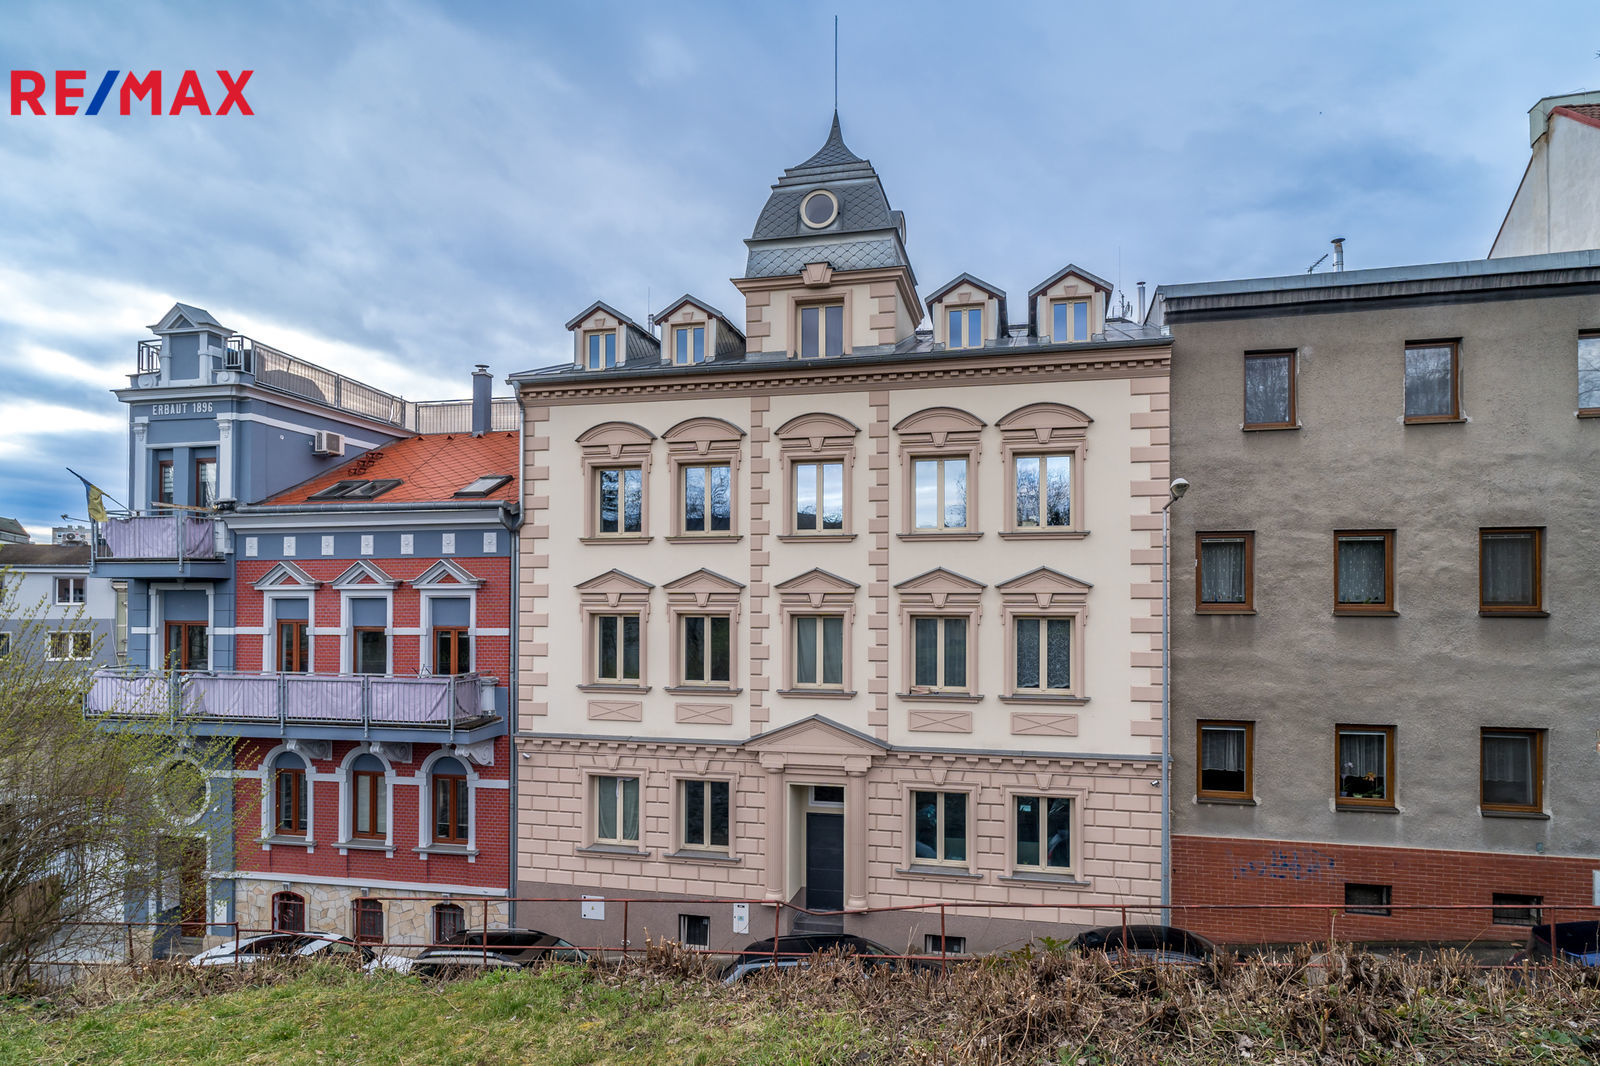 Pronájem bytu 2+1 v osobním vlastnictví, 68 m2, Ústí nad Labem